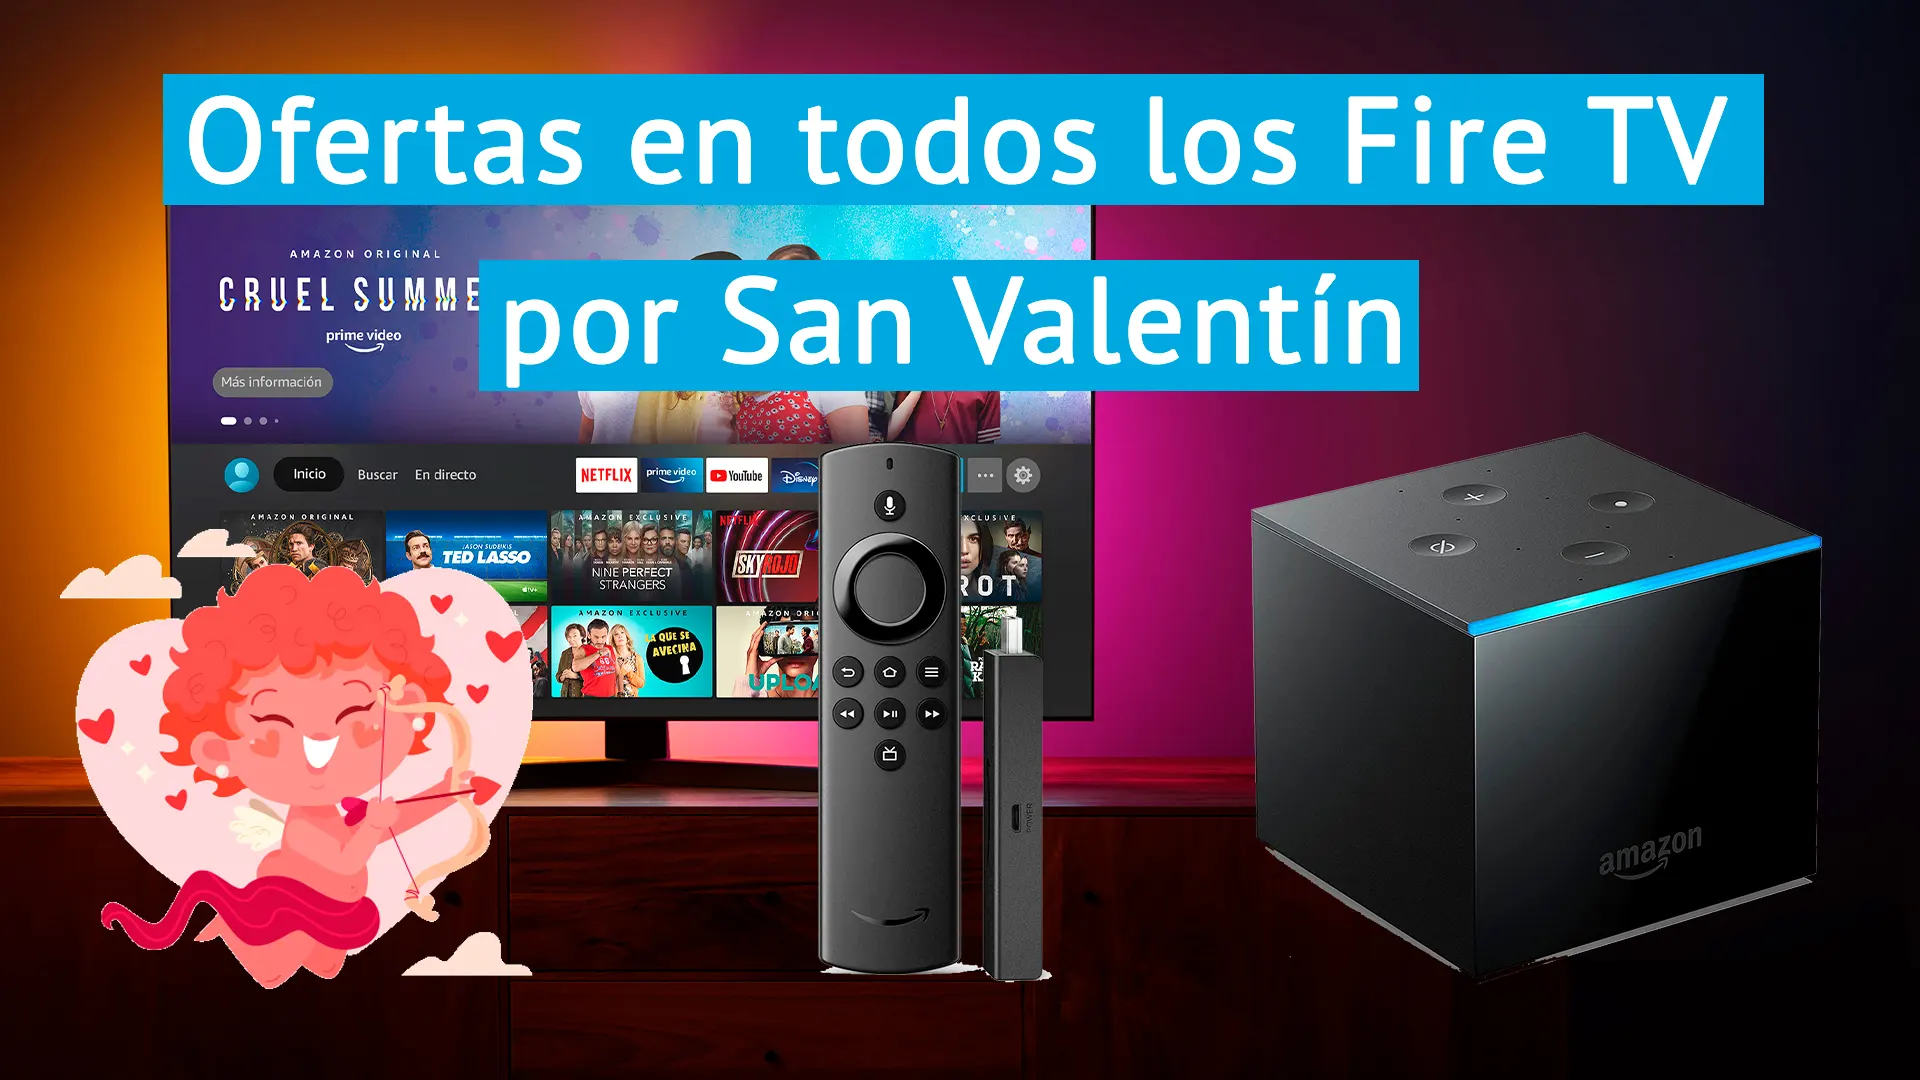 Todas las ofertas del Amazon Fire TV que te enamorarán por San Valentín